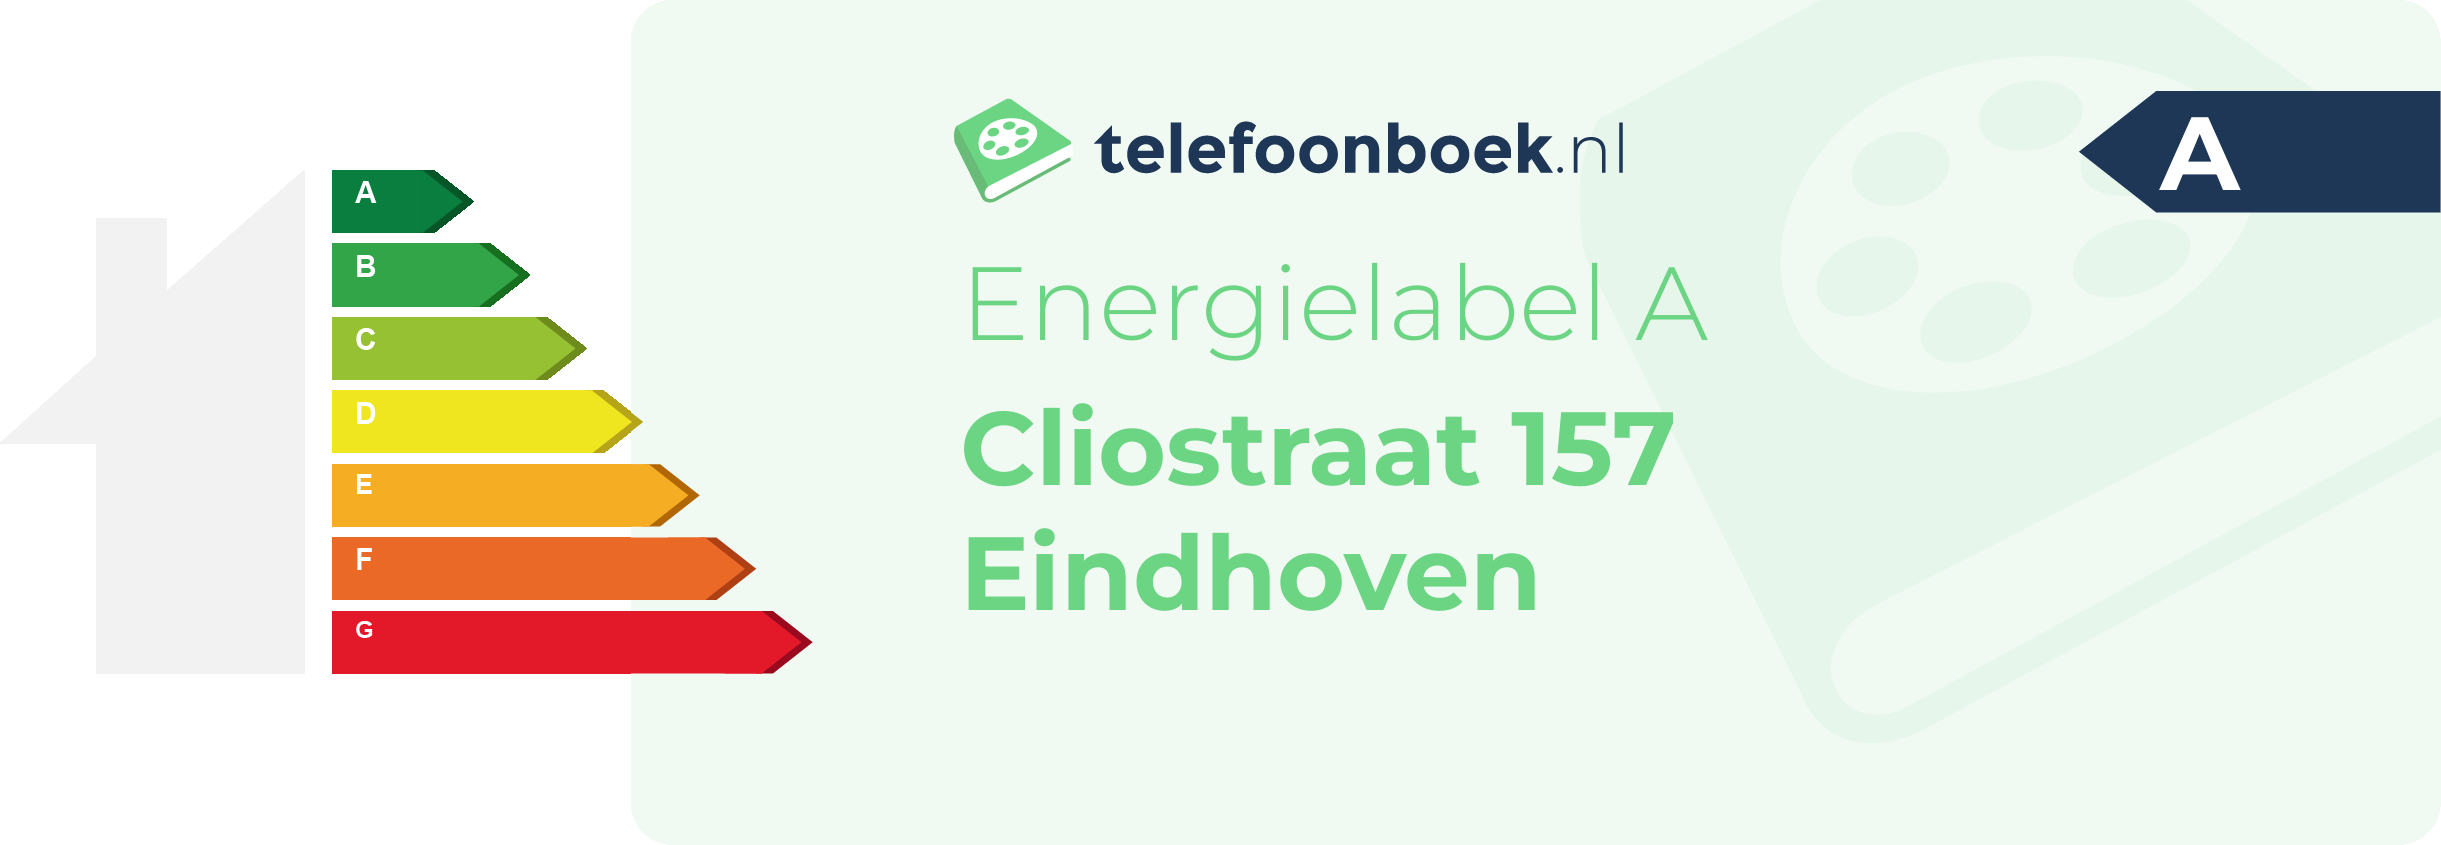 Energielabel Cliostraat 157 Eindhoven